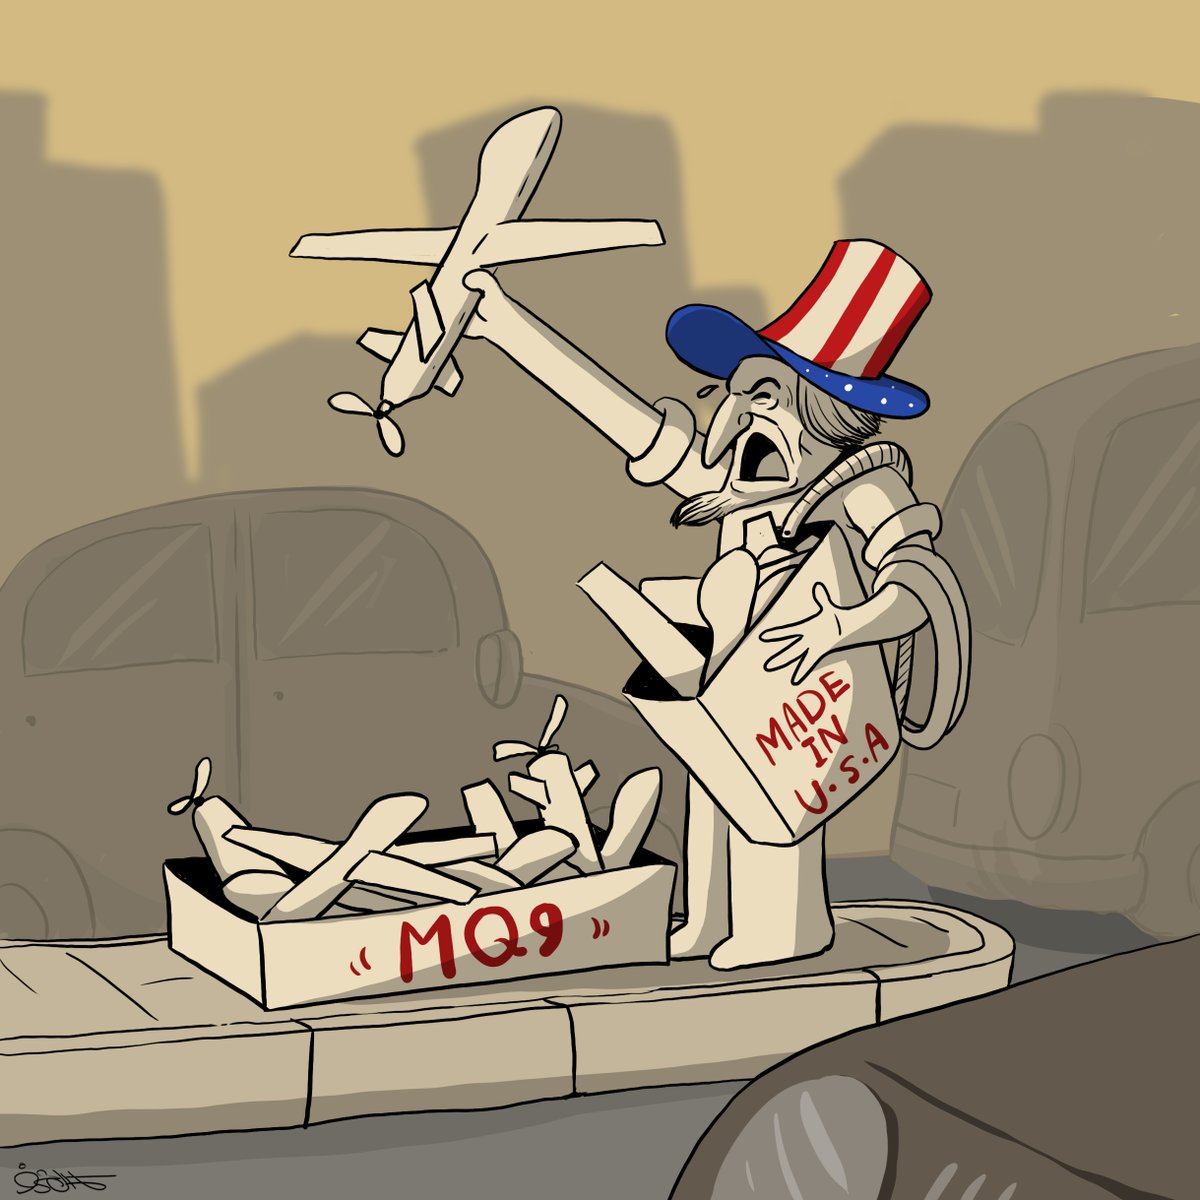 السيد عبدالملك الحوثي : 
طائرات MQ9 الأمريكية ، بورت
#كاريكاتير